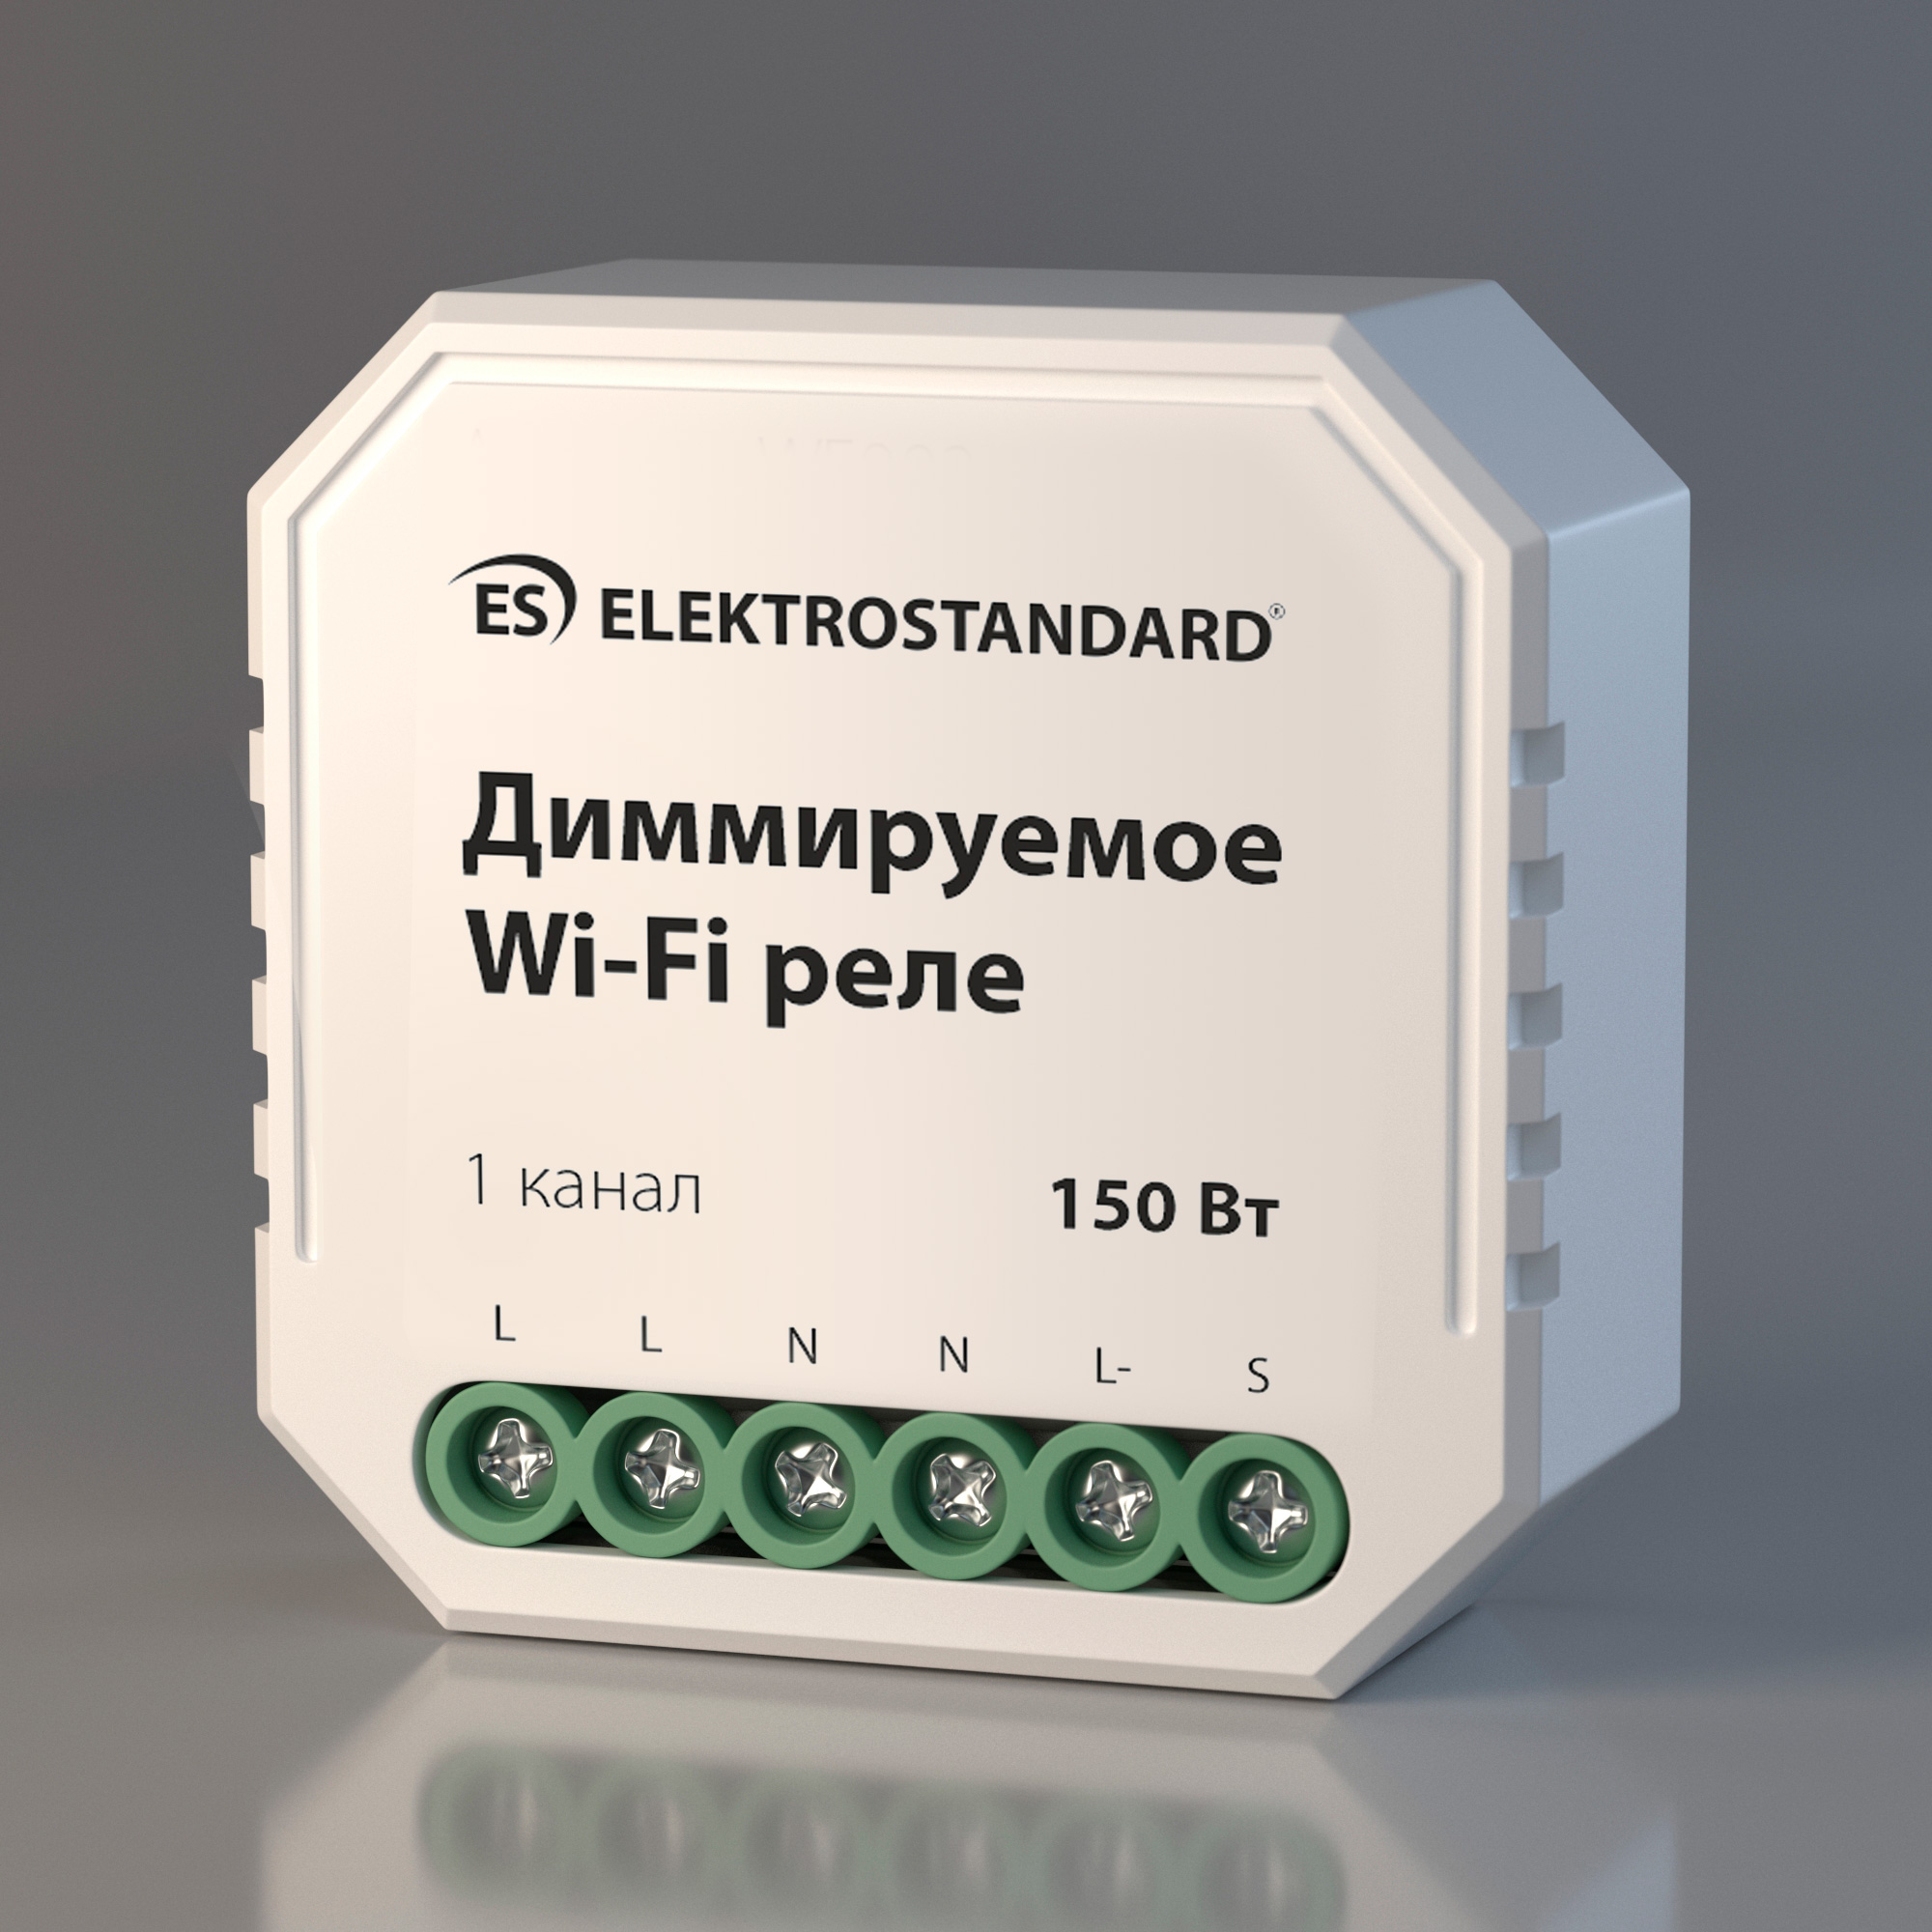 Wi-Fi реле Elektrostandard WF 76002/00 диммируемое реле Умный дом